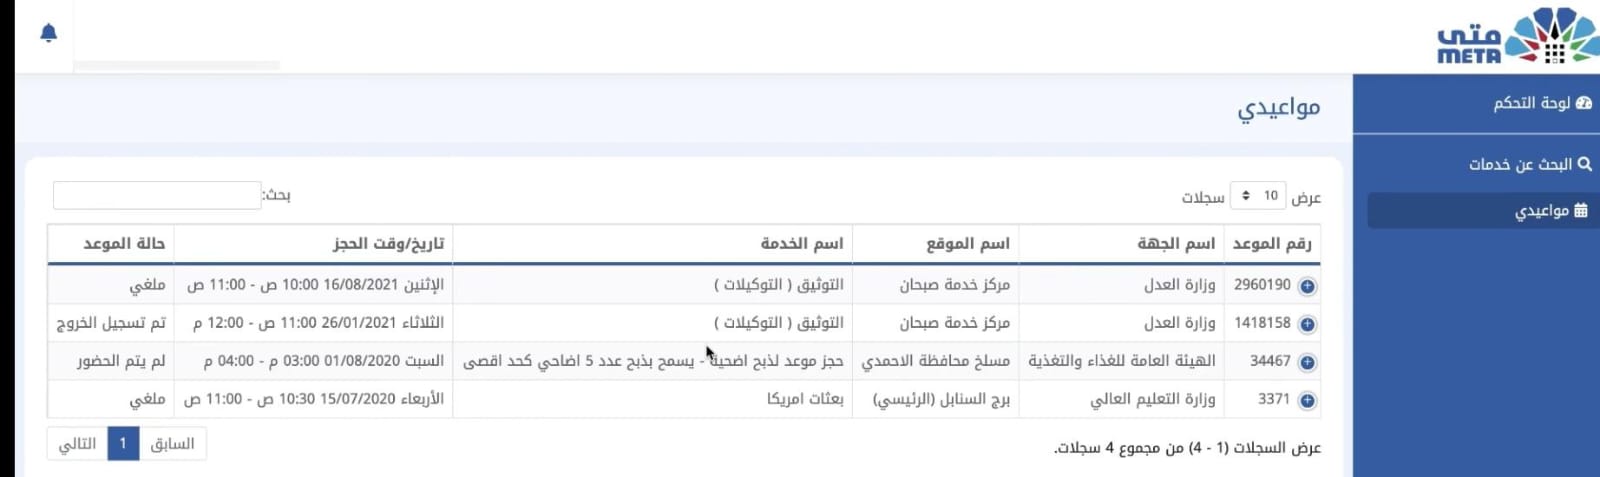 رابط منصة متى الكويت لحجز المواعيد meta kuwait 